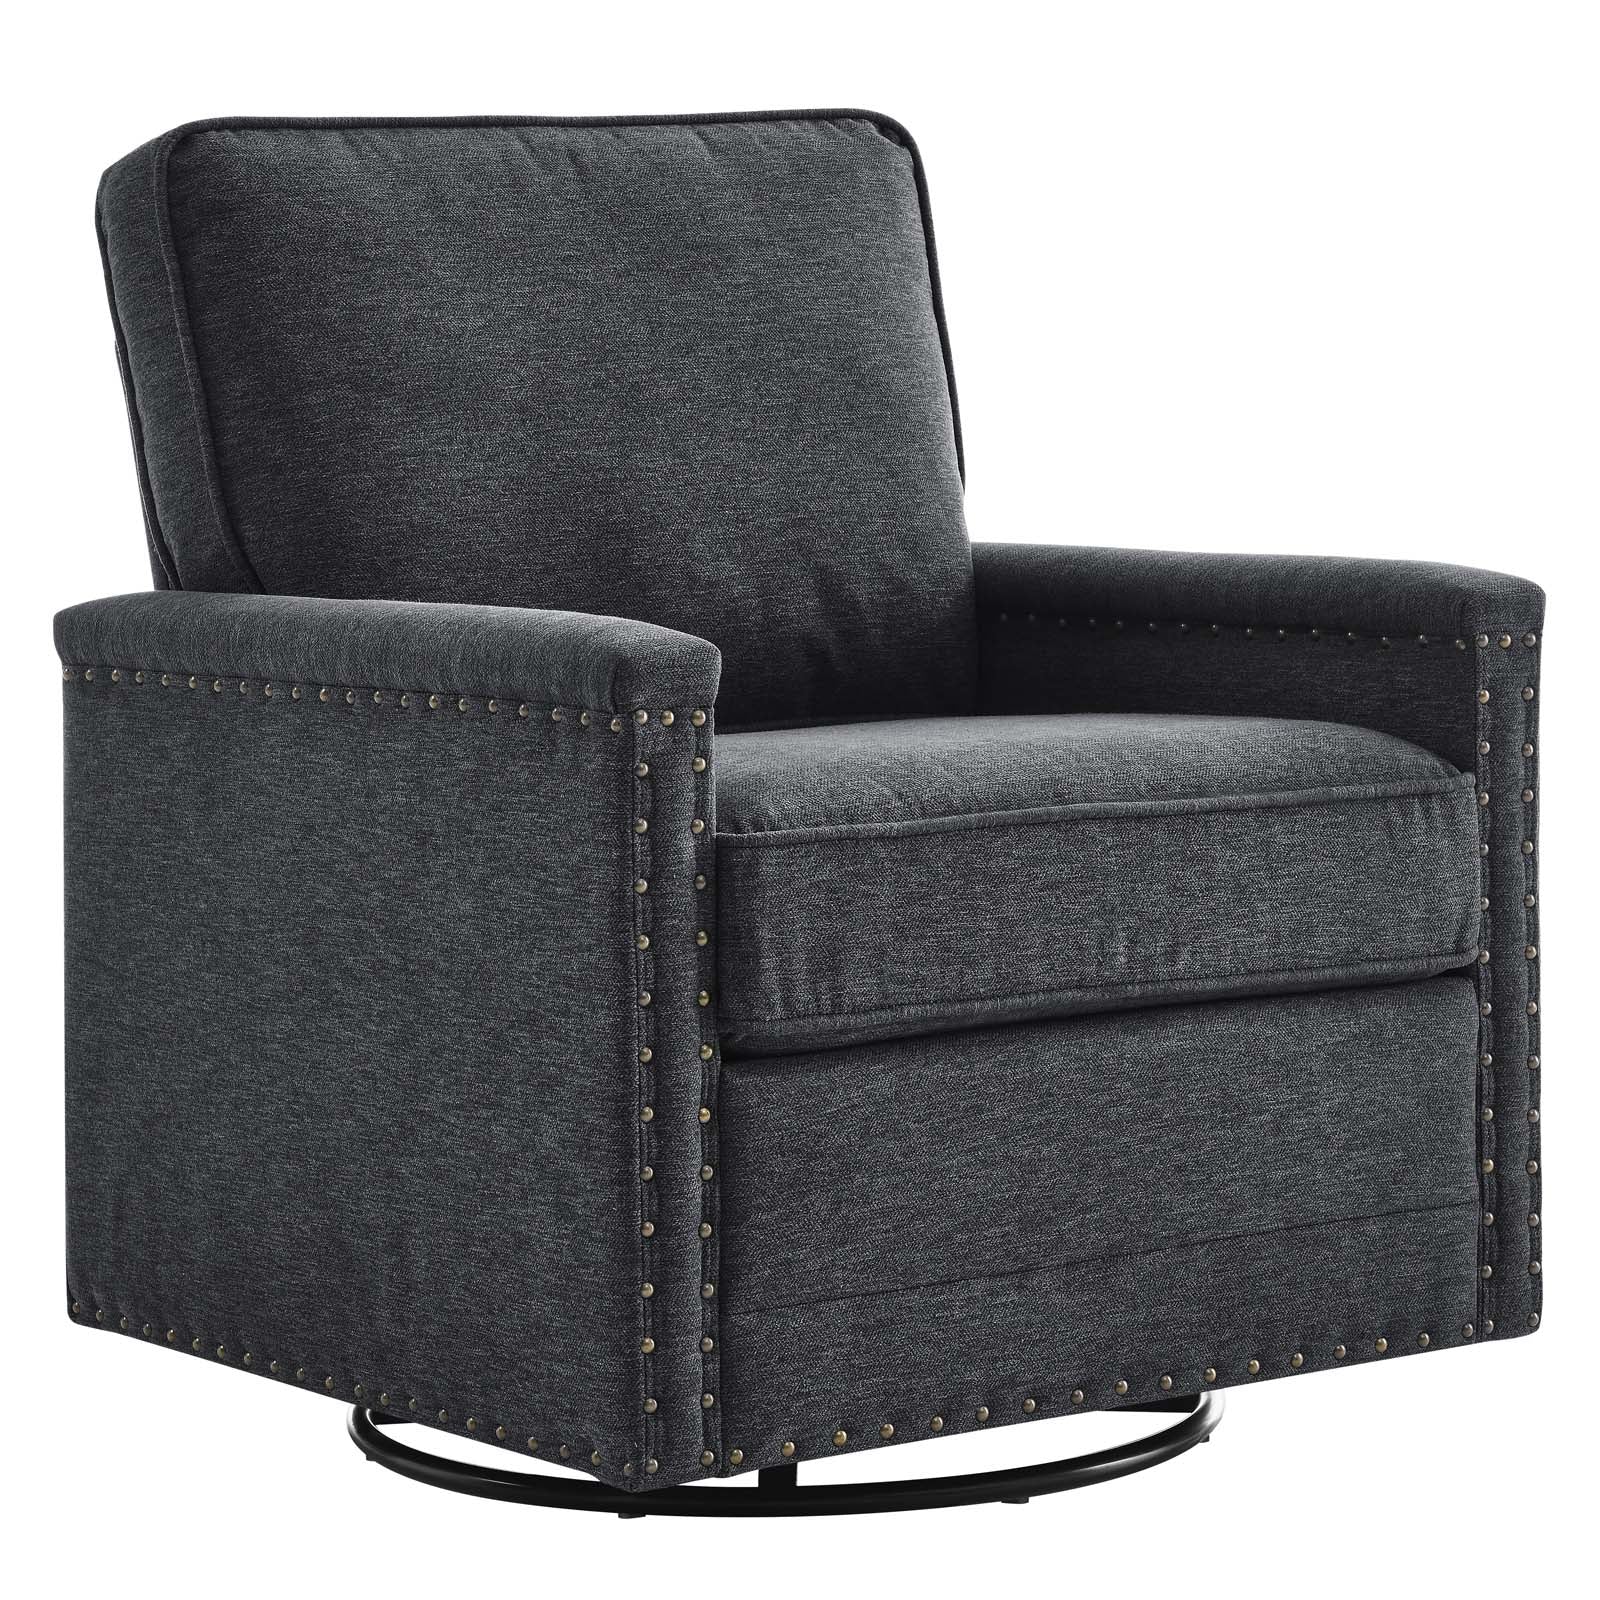 Ashton Upholstered Fabric Swivel Chair - East Shore Modern Home Furnishings